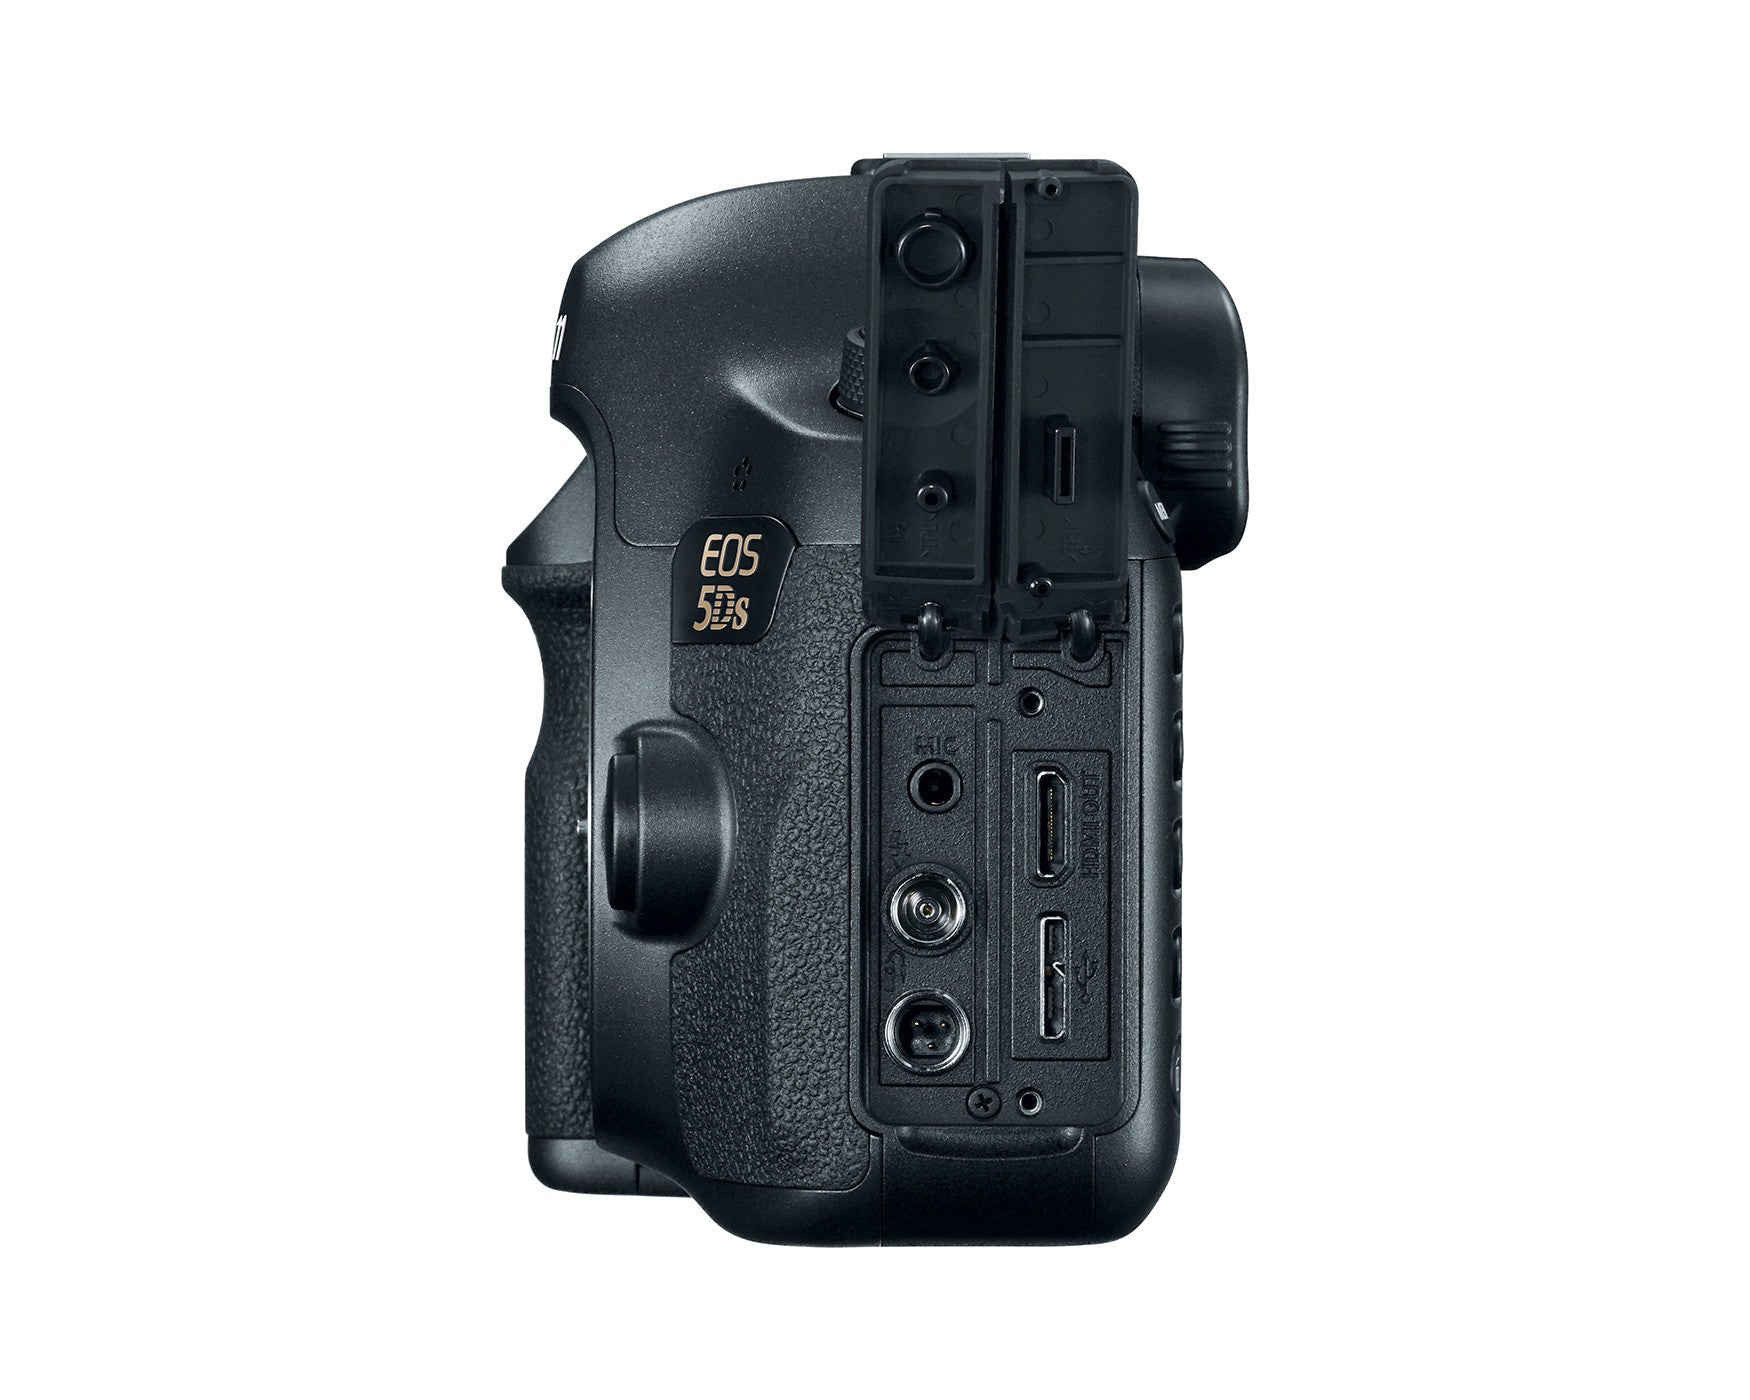 Canon EOS 5DS Digital Camera Body, camera dslr cameras, Canon - Pictureline  - 3